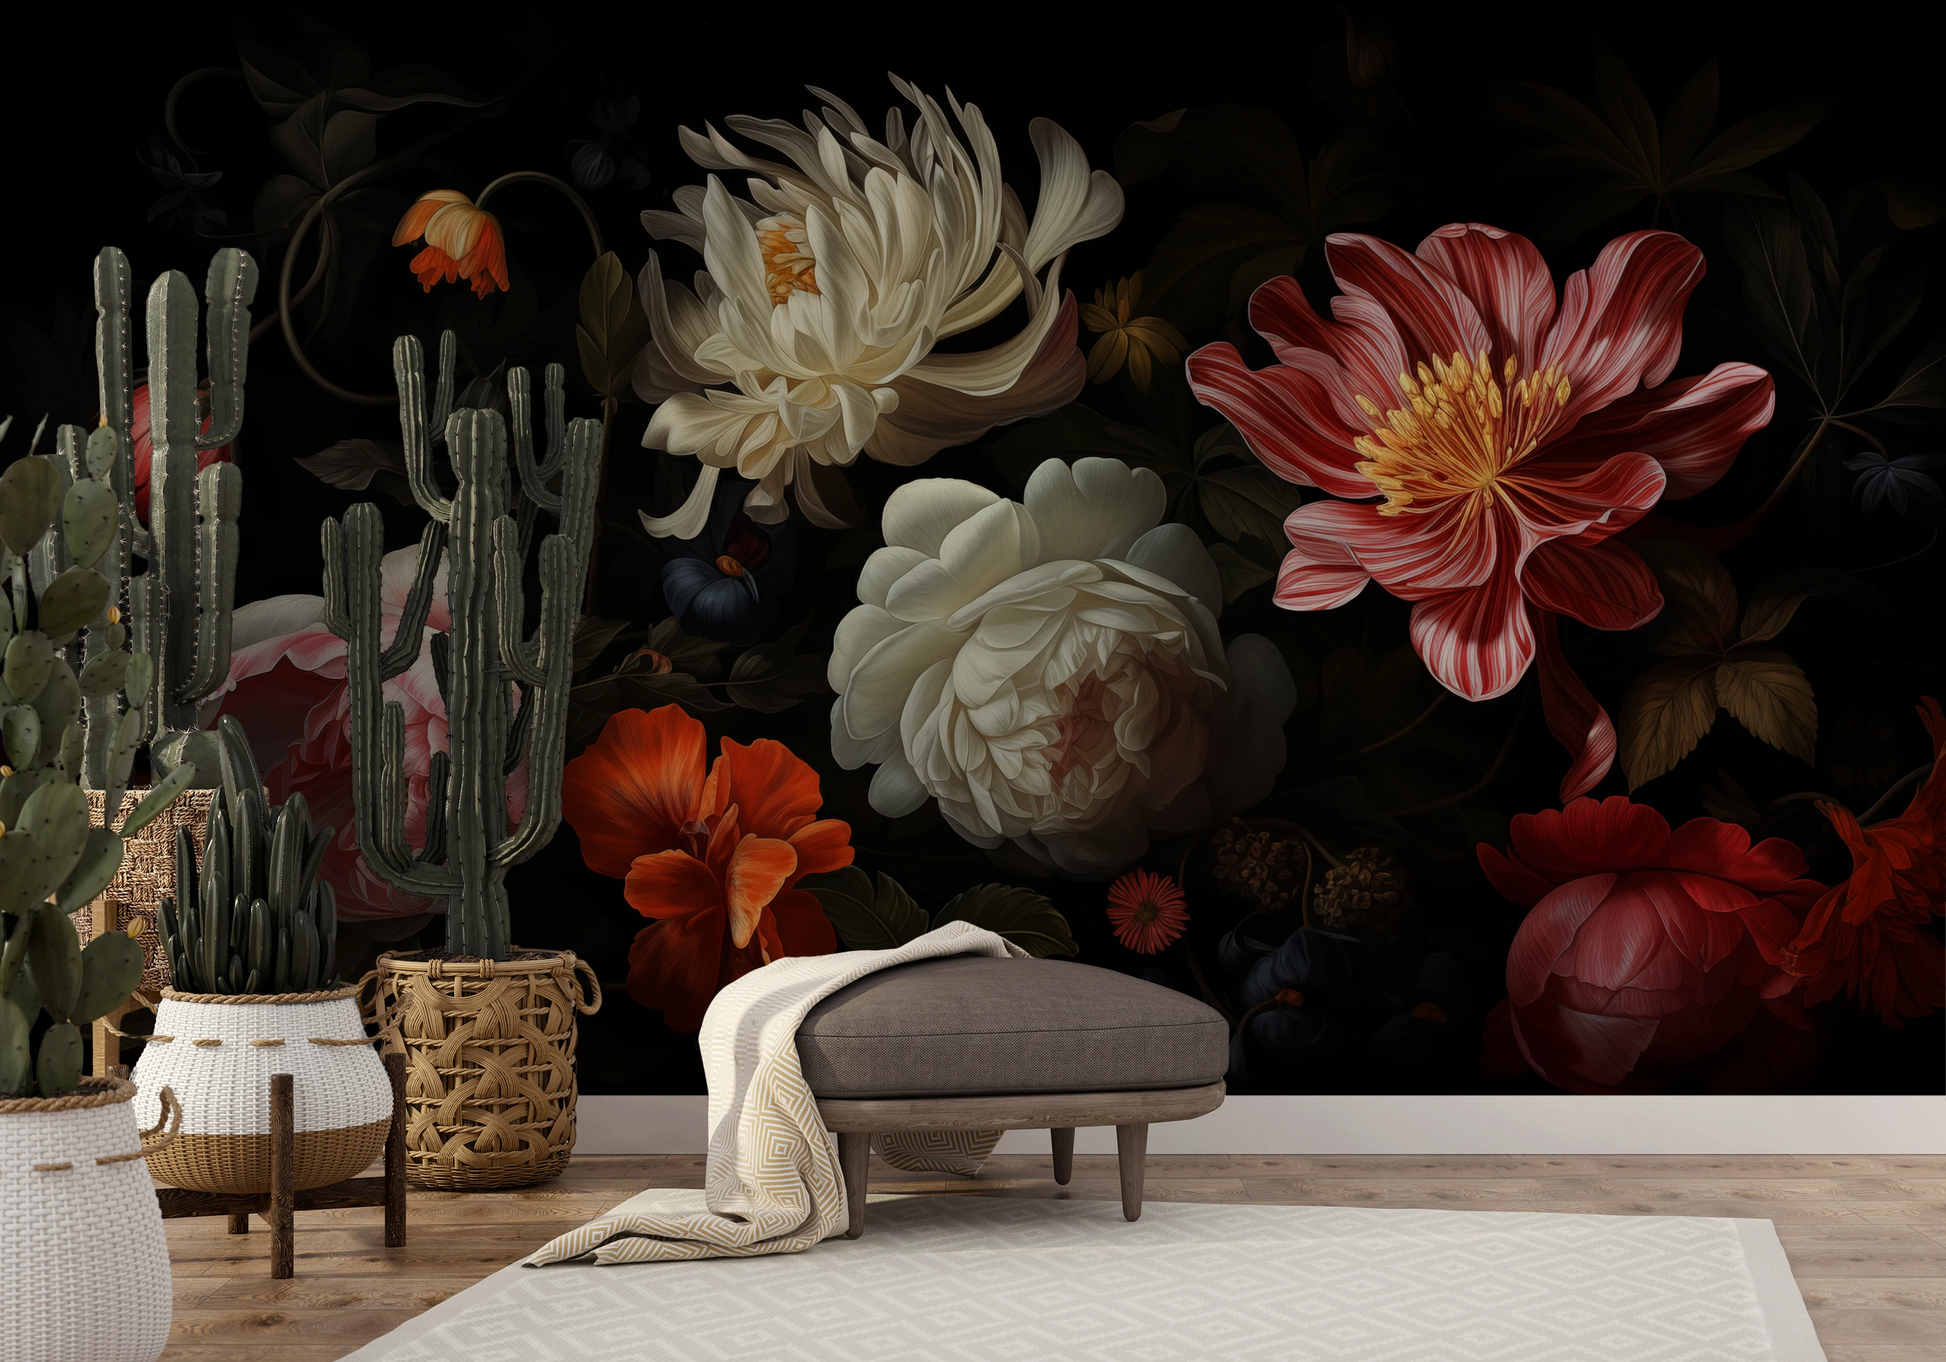 Fototapeta malowana o nazwie Dutch Floral Masterpiece pokazana w aranżacji wnętrza.